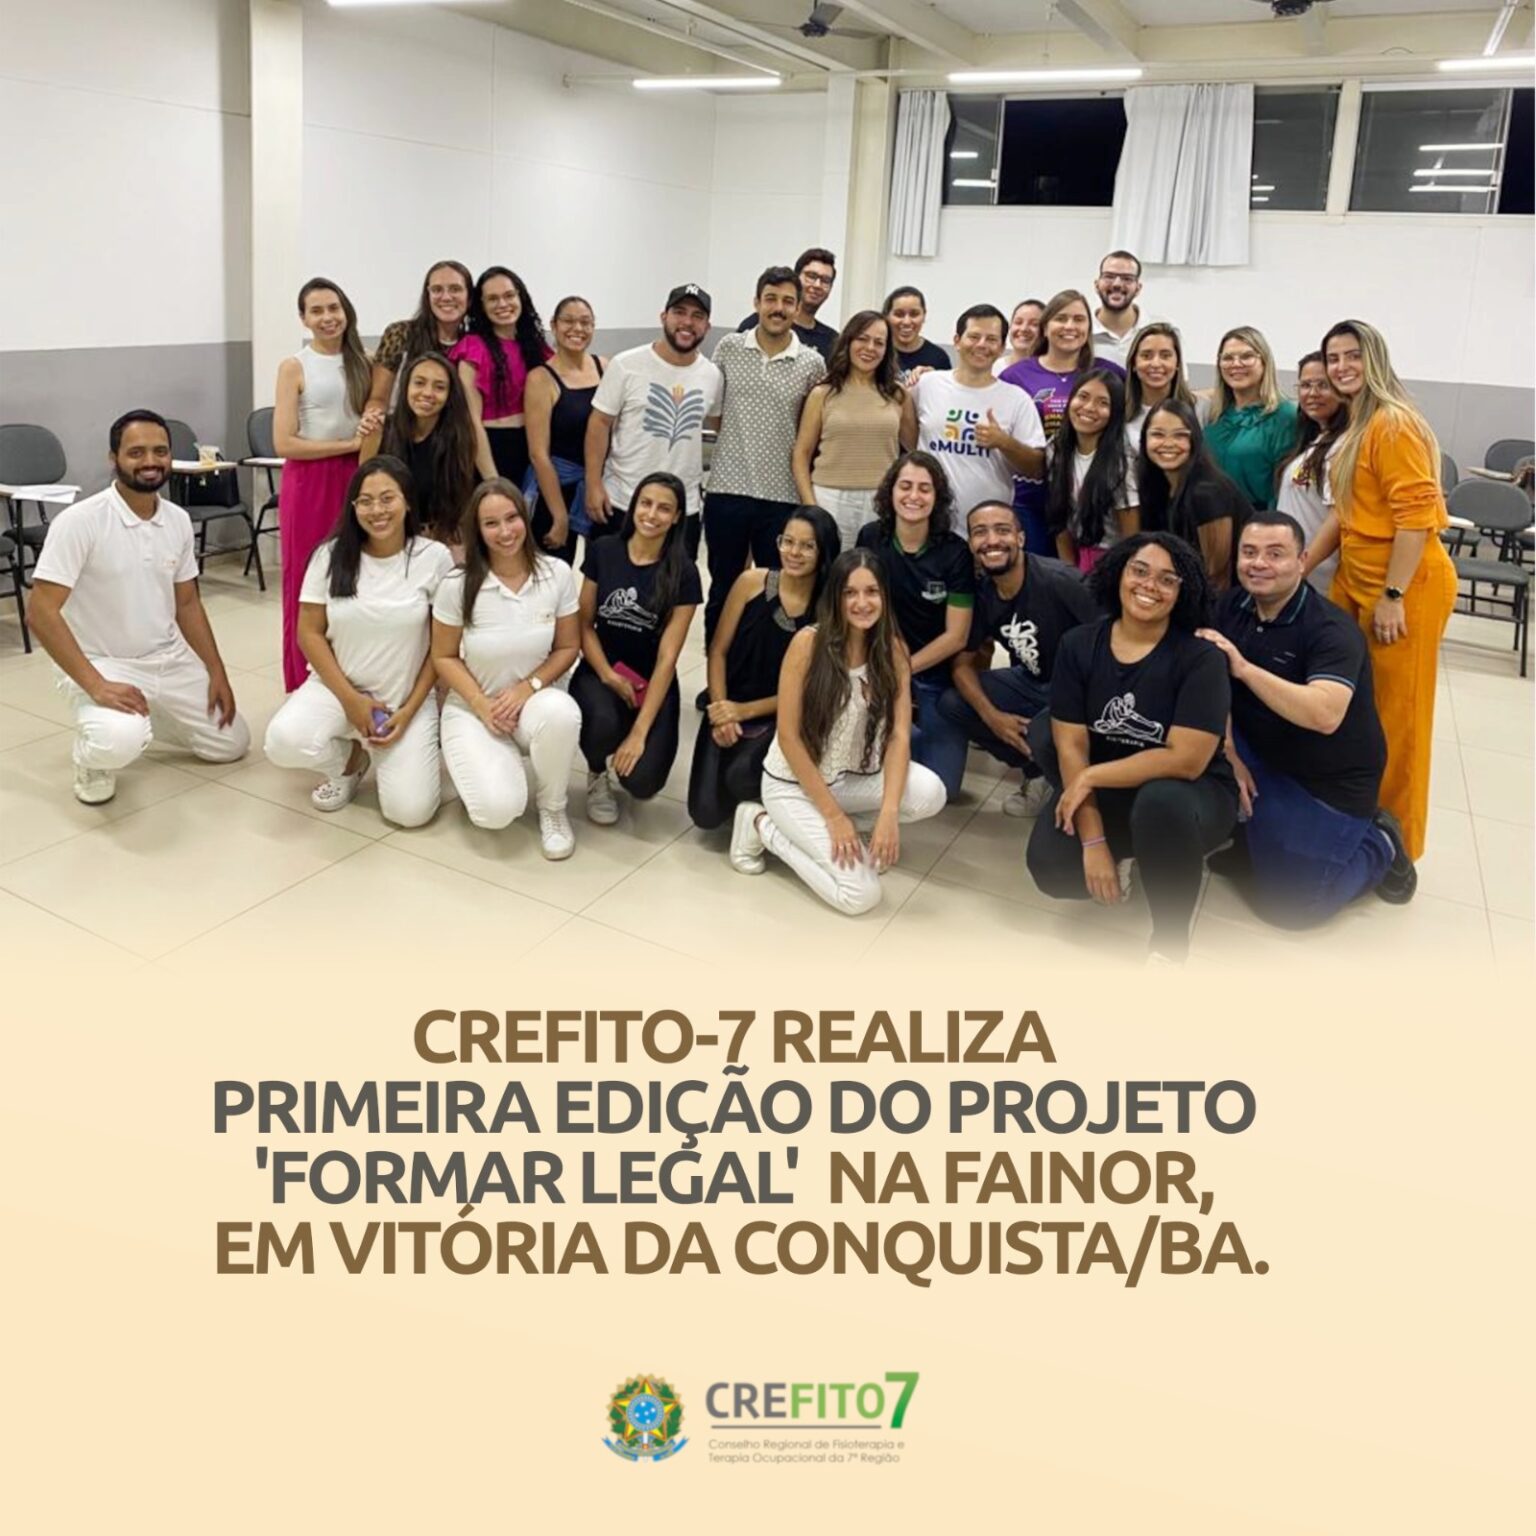 CREFITO-7 realiza primeira edição do projeto "Formar Legal" na FAINOR, em Vitória da Conquista/BA.